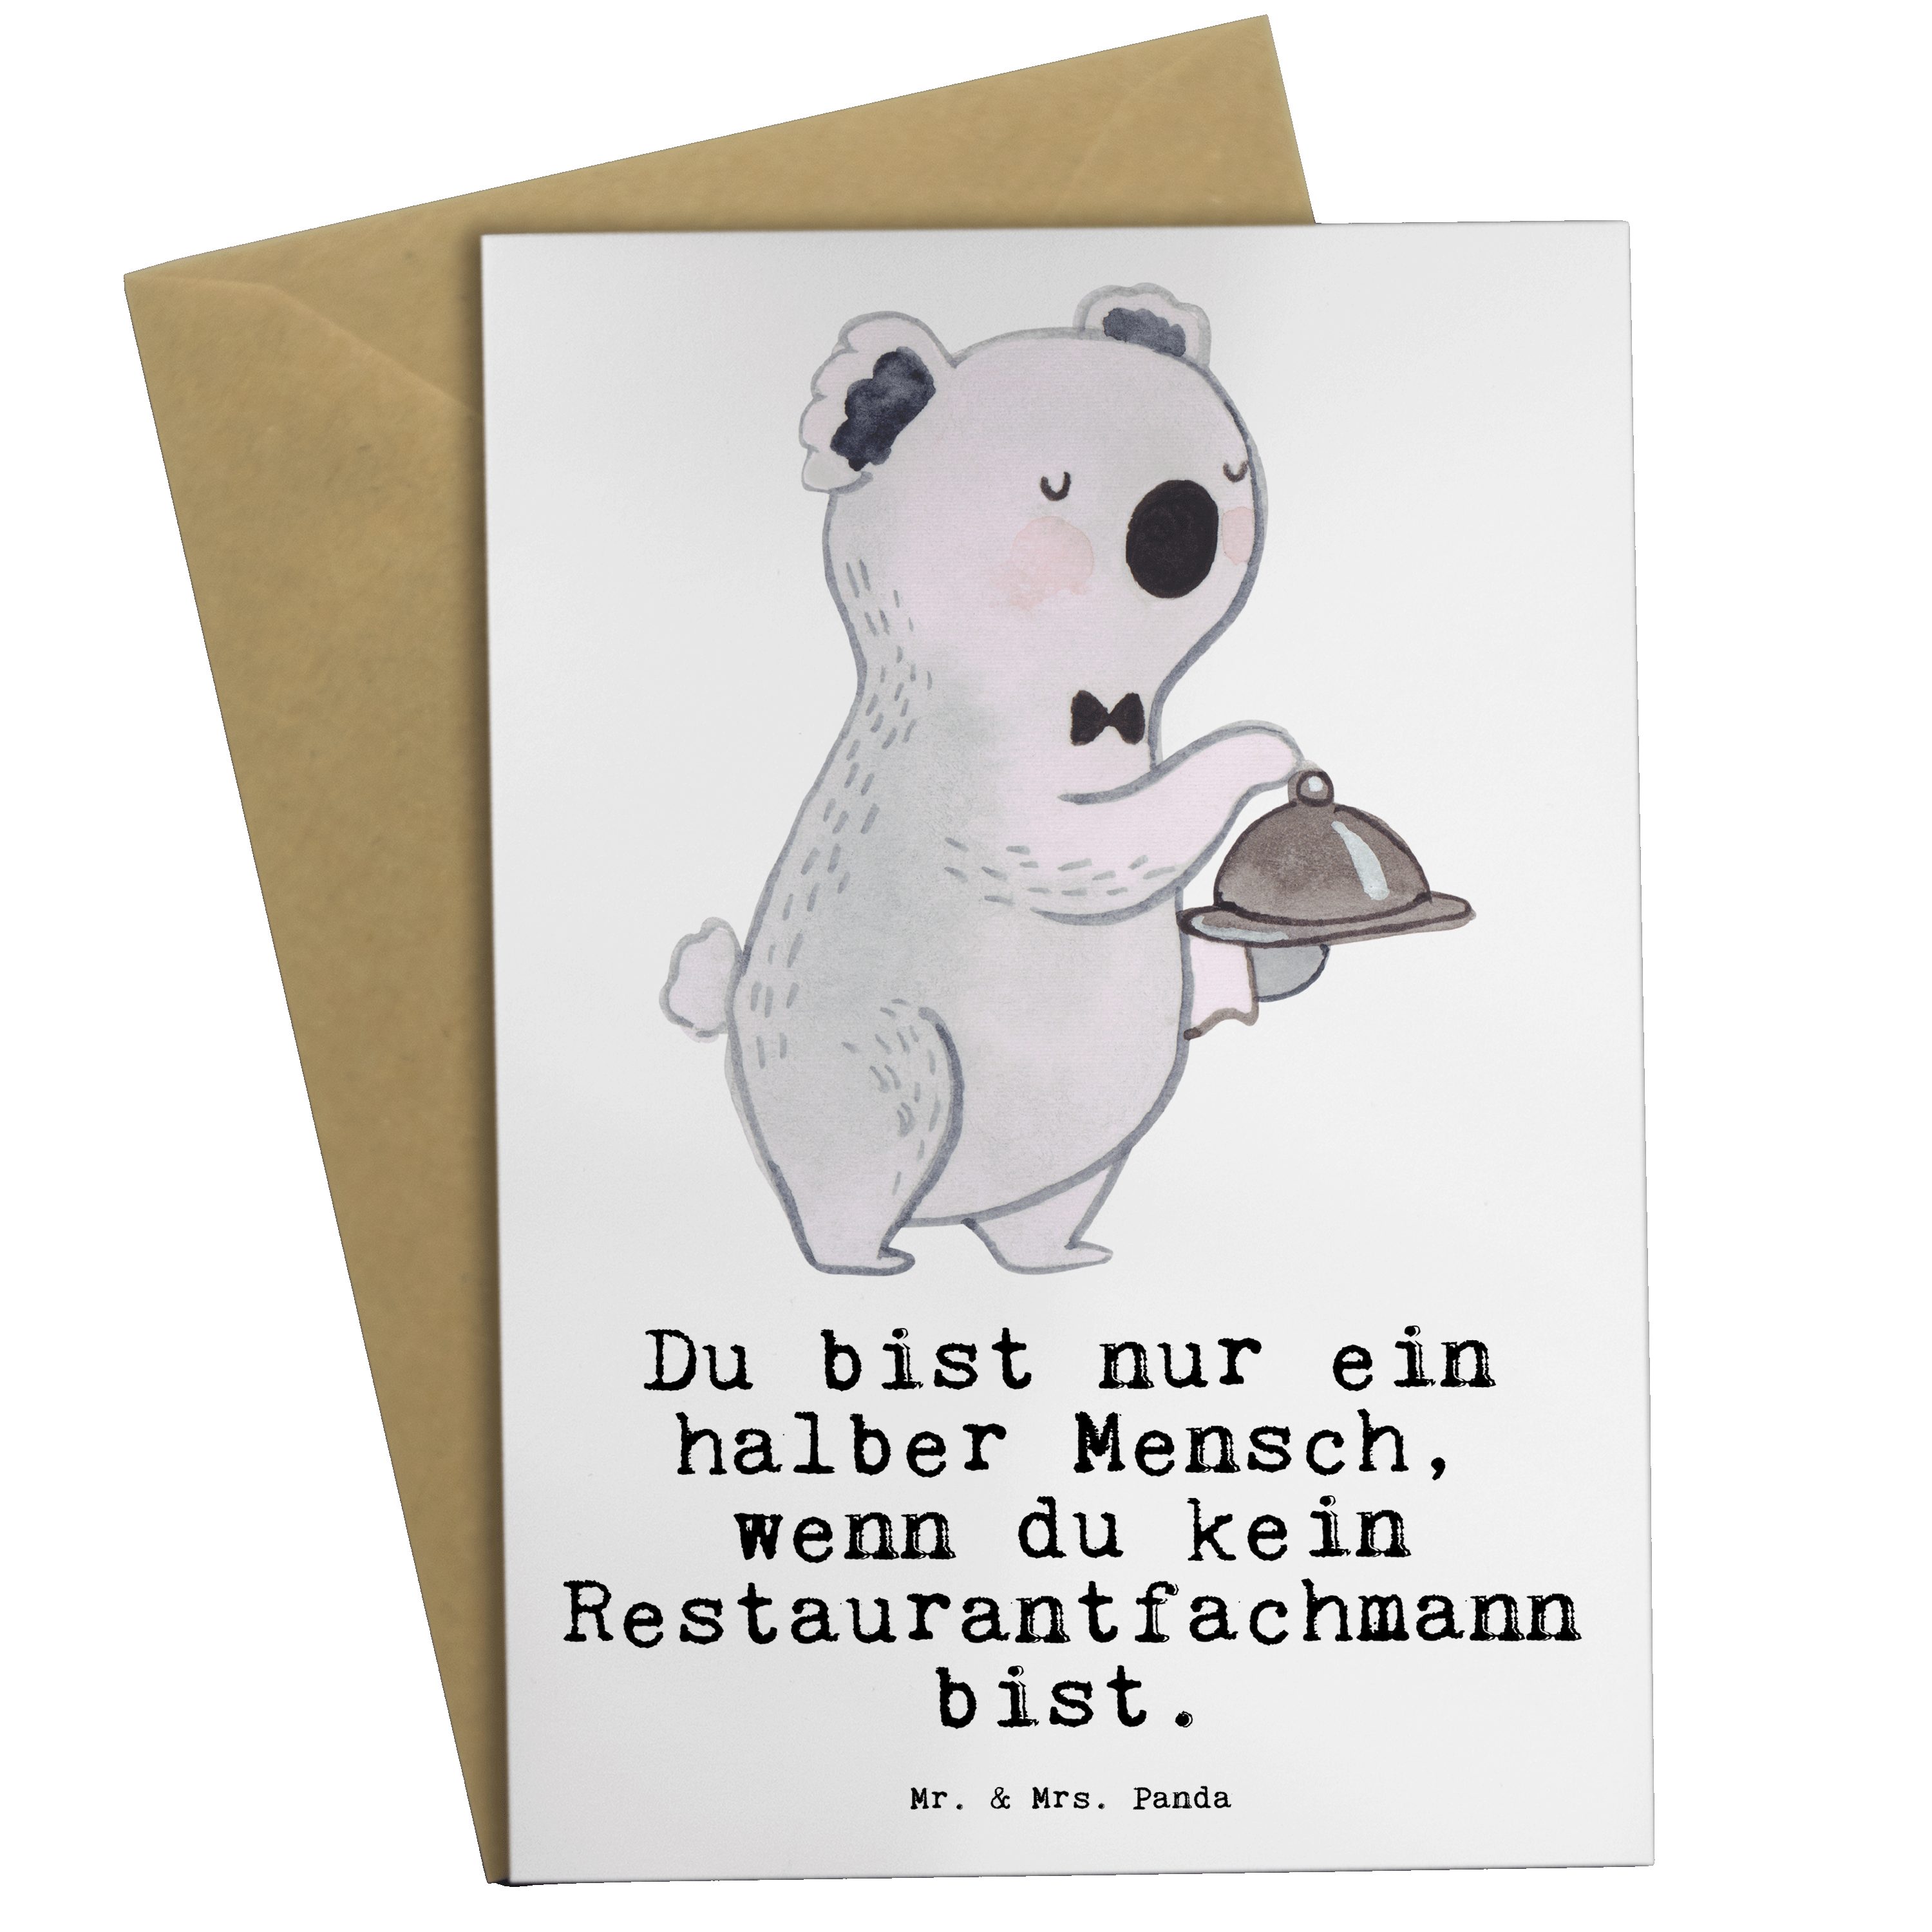 Mr. & Mrs. Panda Weiß Geschenk, Dankeschön, Hochzeitsk Restaurantfachmann Herz - - Grußkarte mit